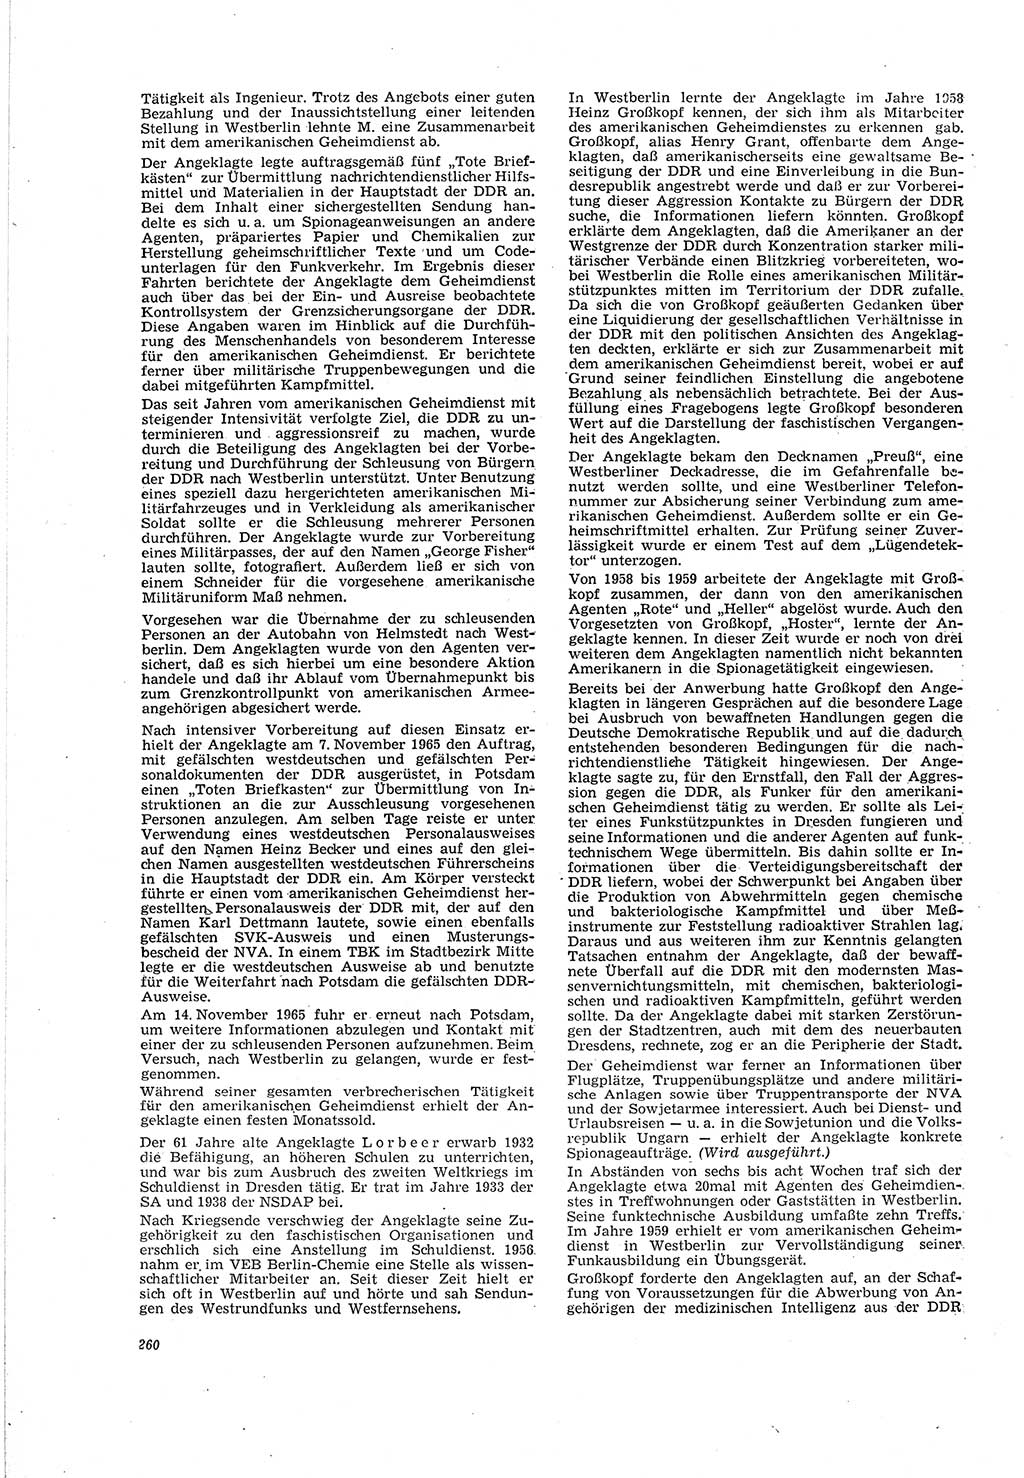 Neue Justiz (NJ), Zeitschrift für Recht und Rechtswissenschaft [Deutsche Demokratische Republik (DDR)], 20. Jahrgang 1966, Seite 260 (NJ DDR 1966, S. 260)